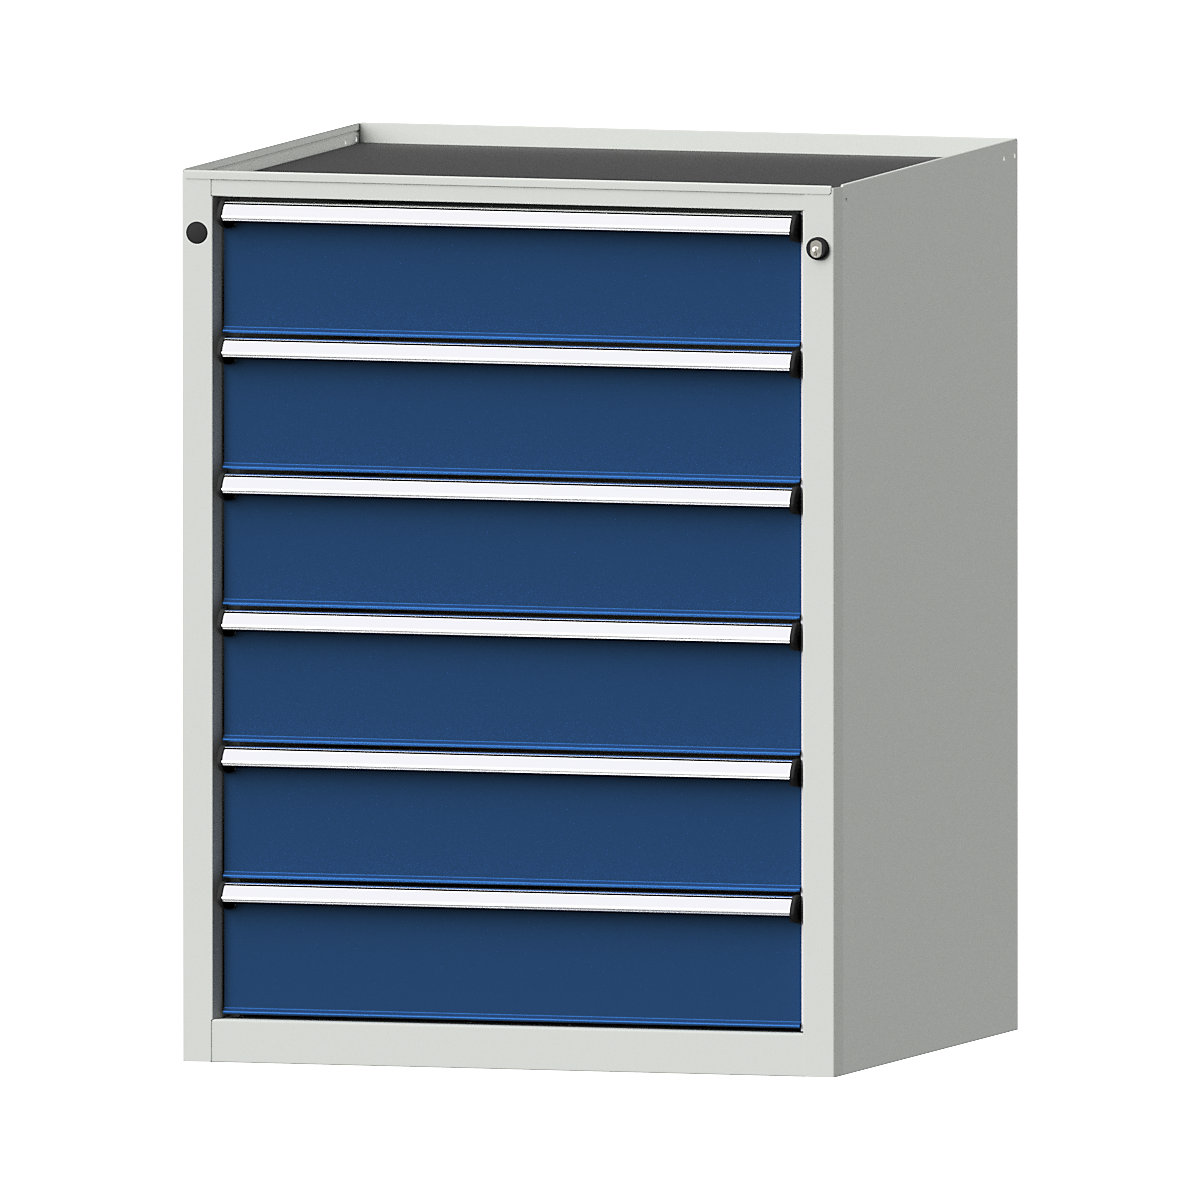 Zásuvková skříň – ANKE, š x h 760 x 675 mm, nosnost zásuvky 200 kg, 6 zásuvek, výška 980 mm, čelo hořcově modré